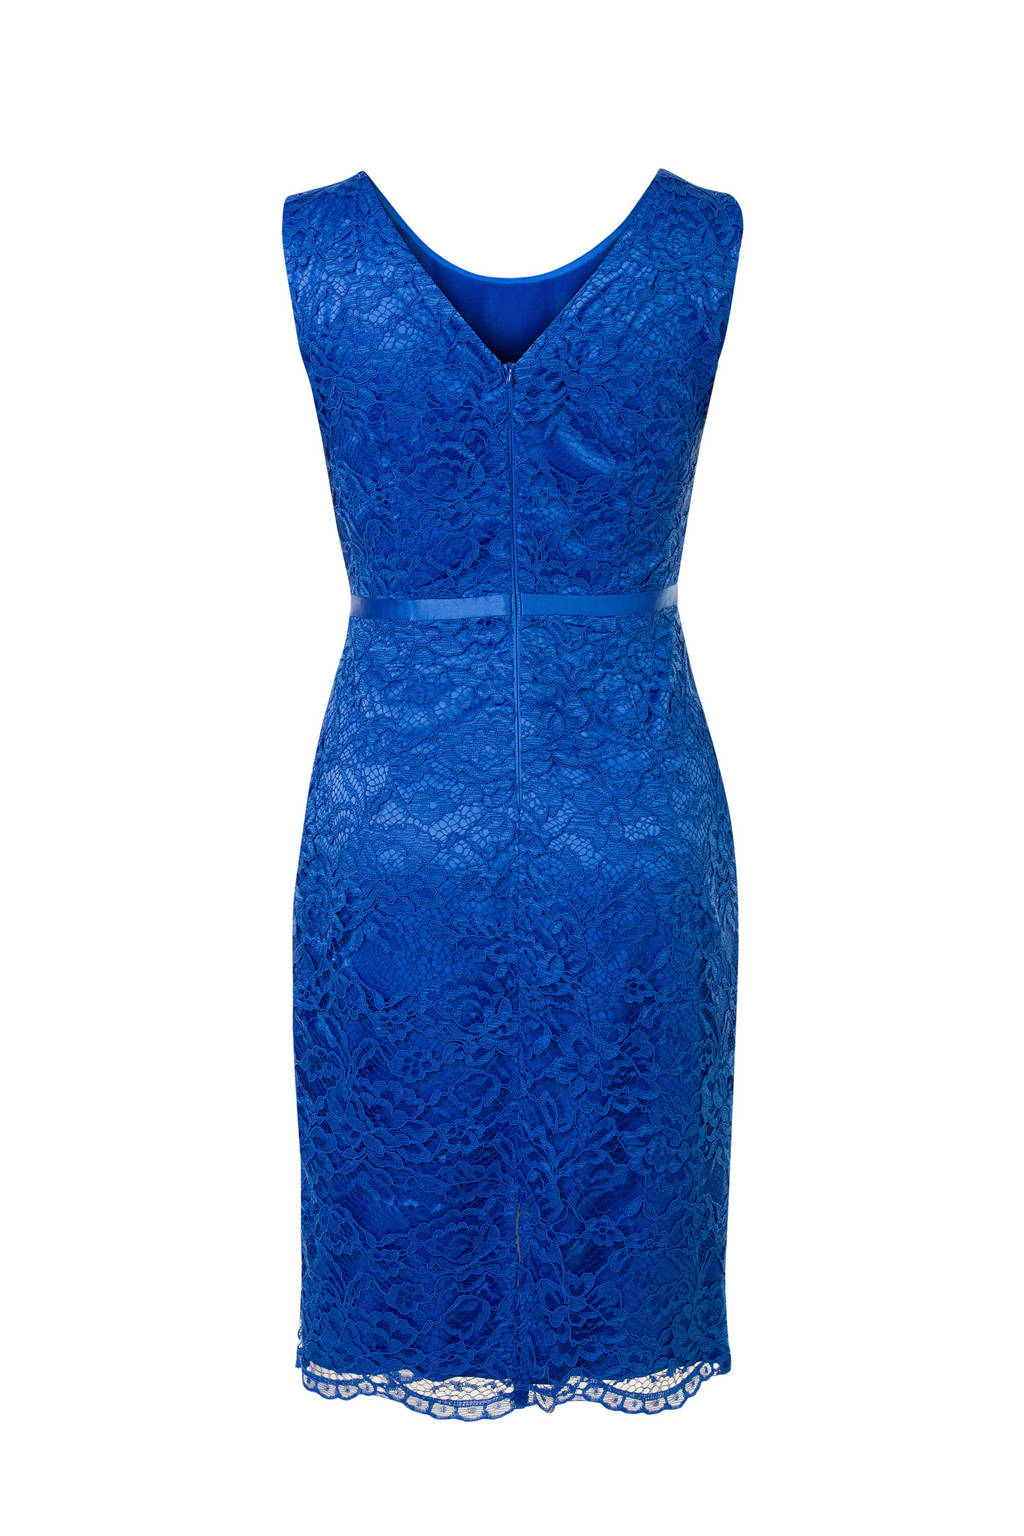 Spiksplinternieuw Steps kanten jurk blauw | wehkamp QX-49